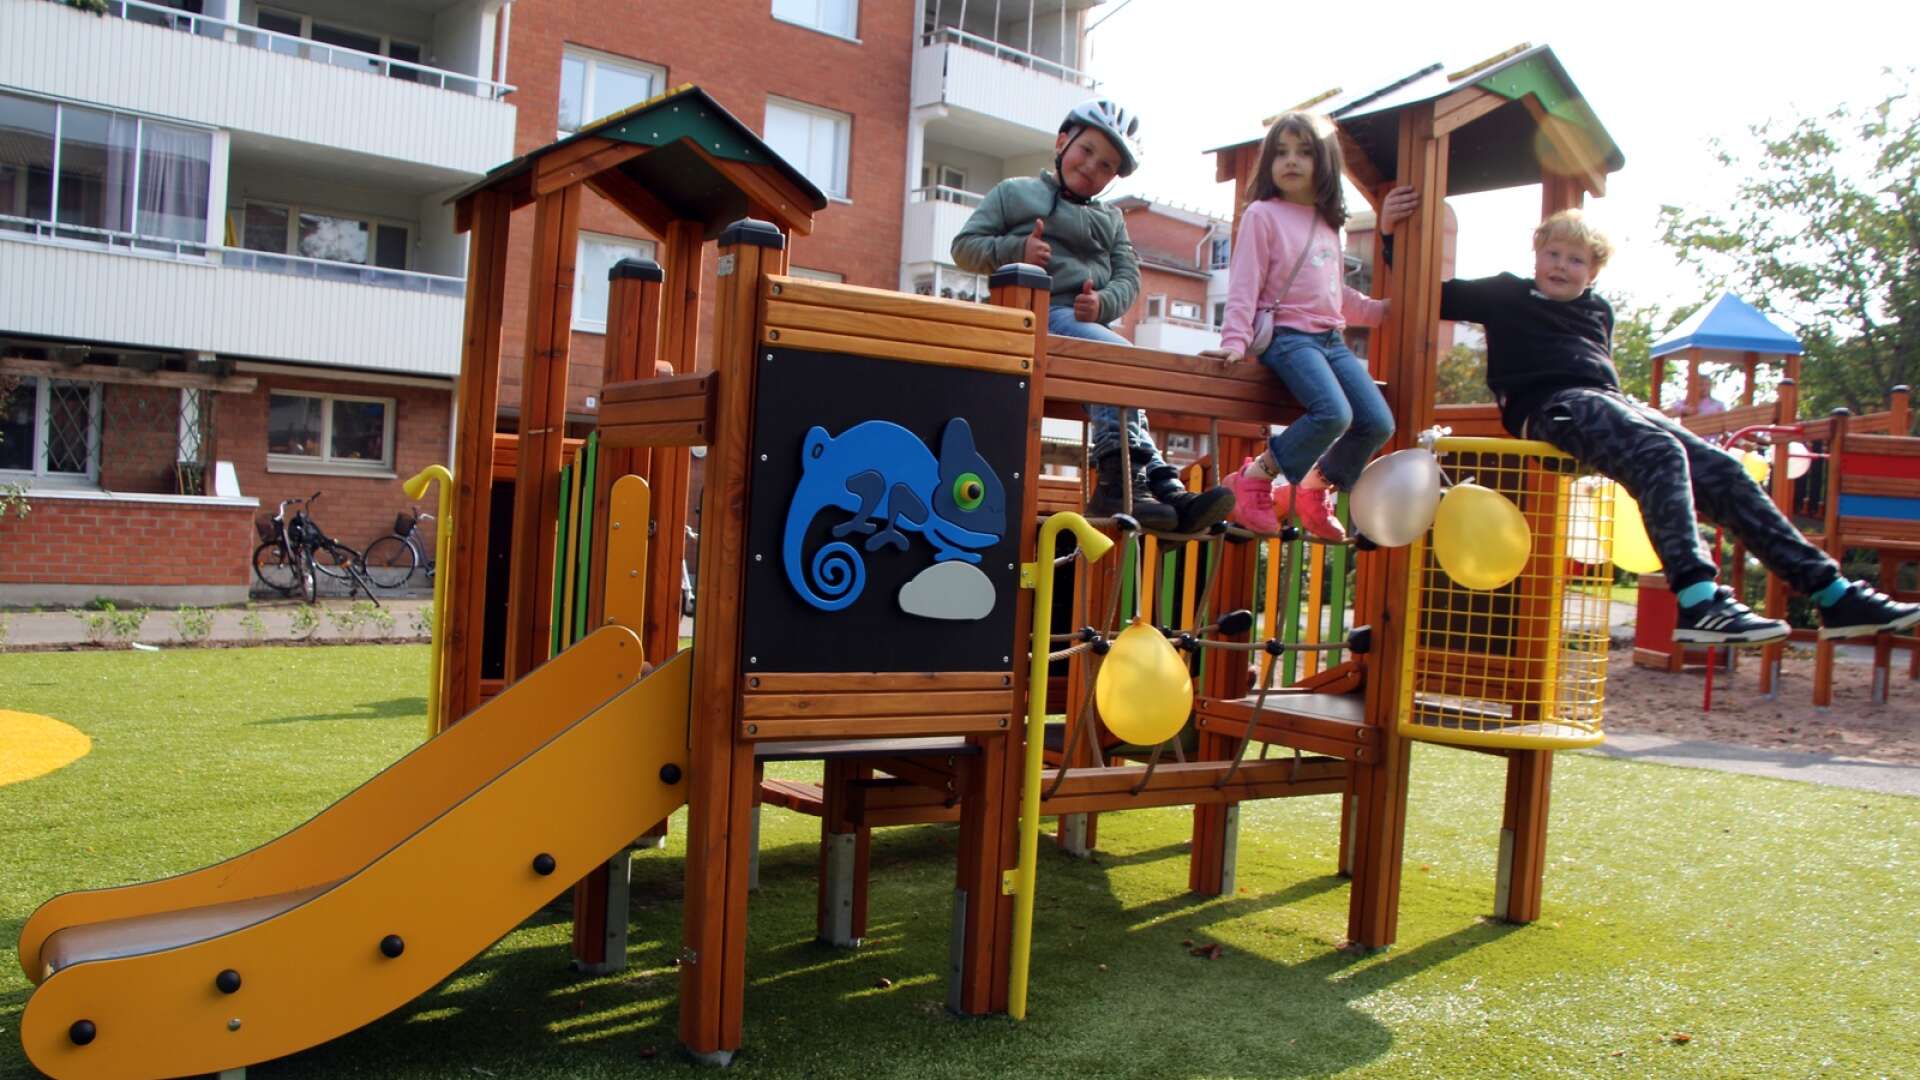 Barnen hade fullt upp med att leka på den nya lekplatsen, som också består av gungor, hinderbanor, snurrkarusell, lekhus och en kompisgunga.